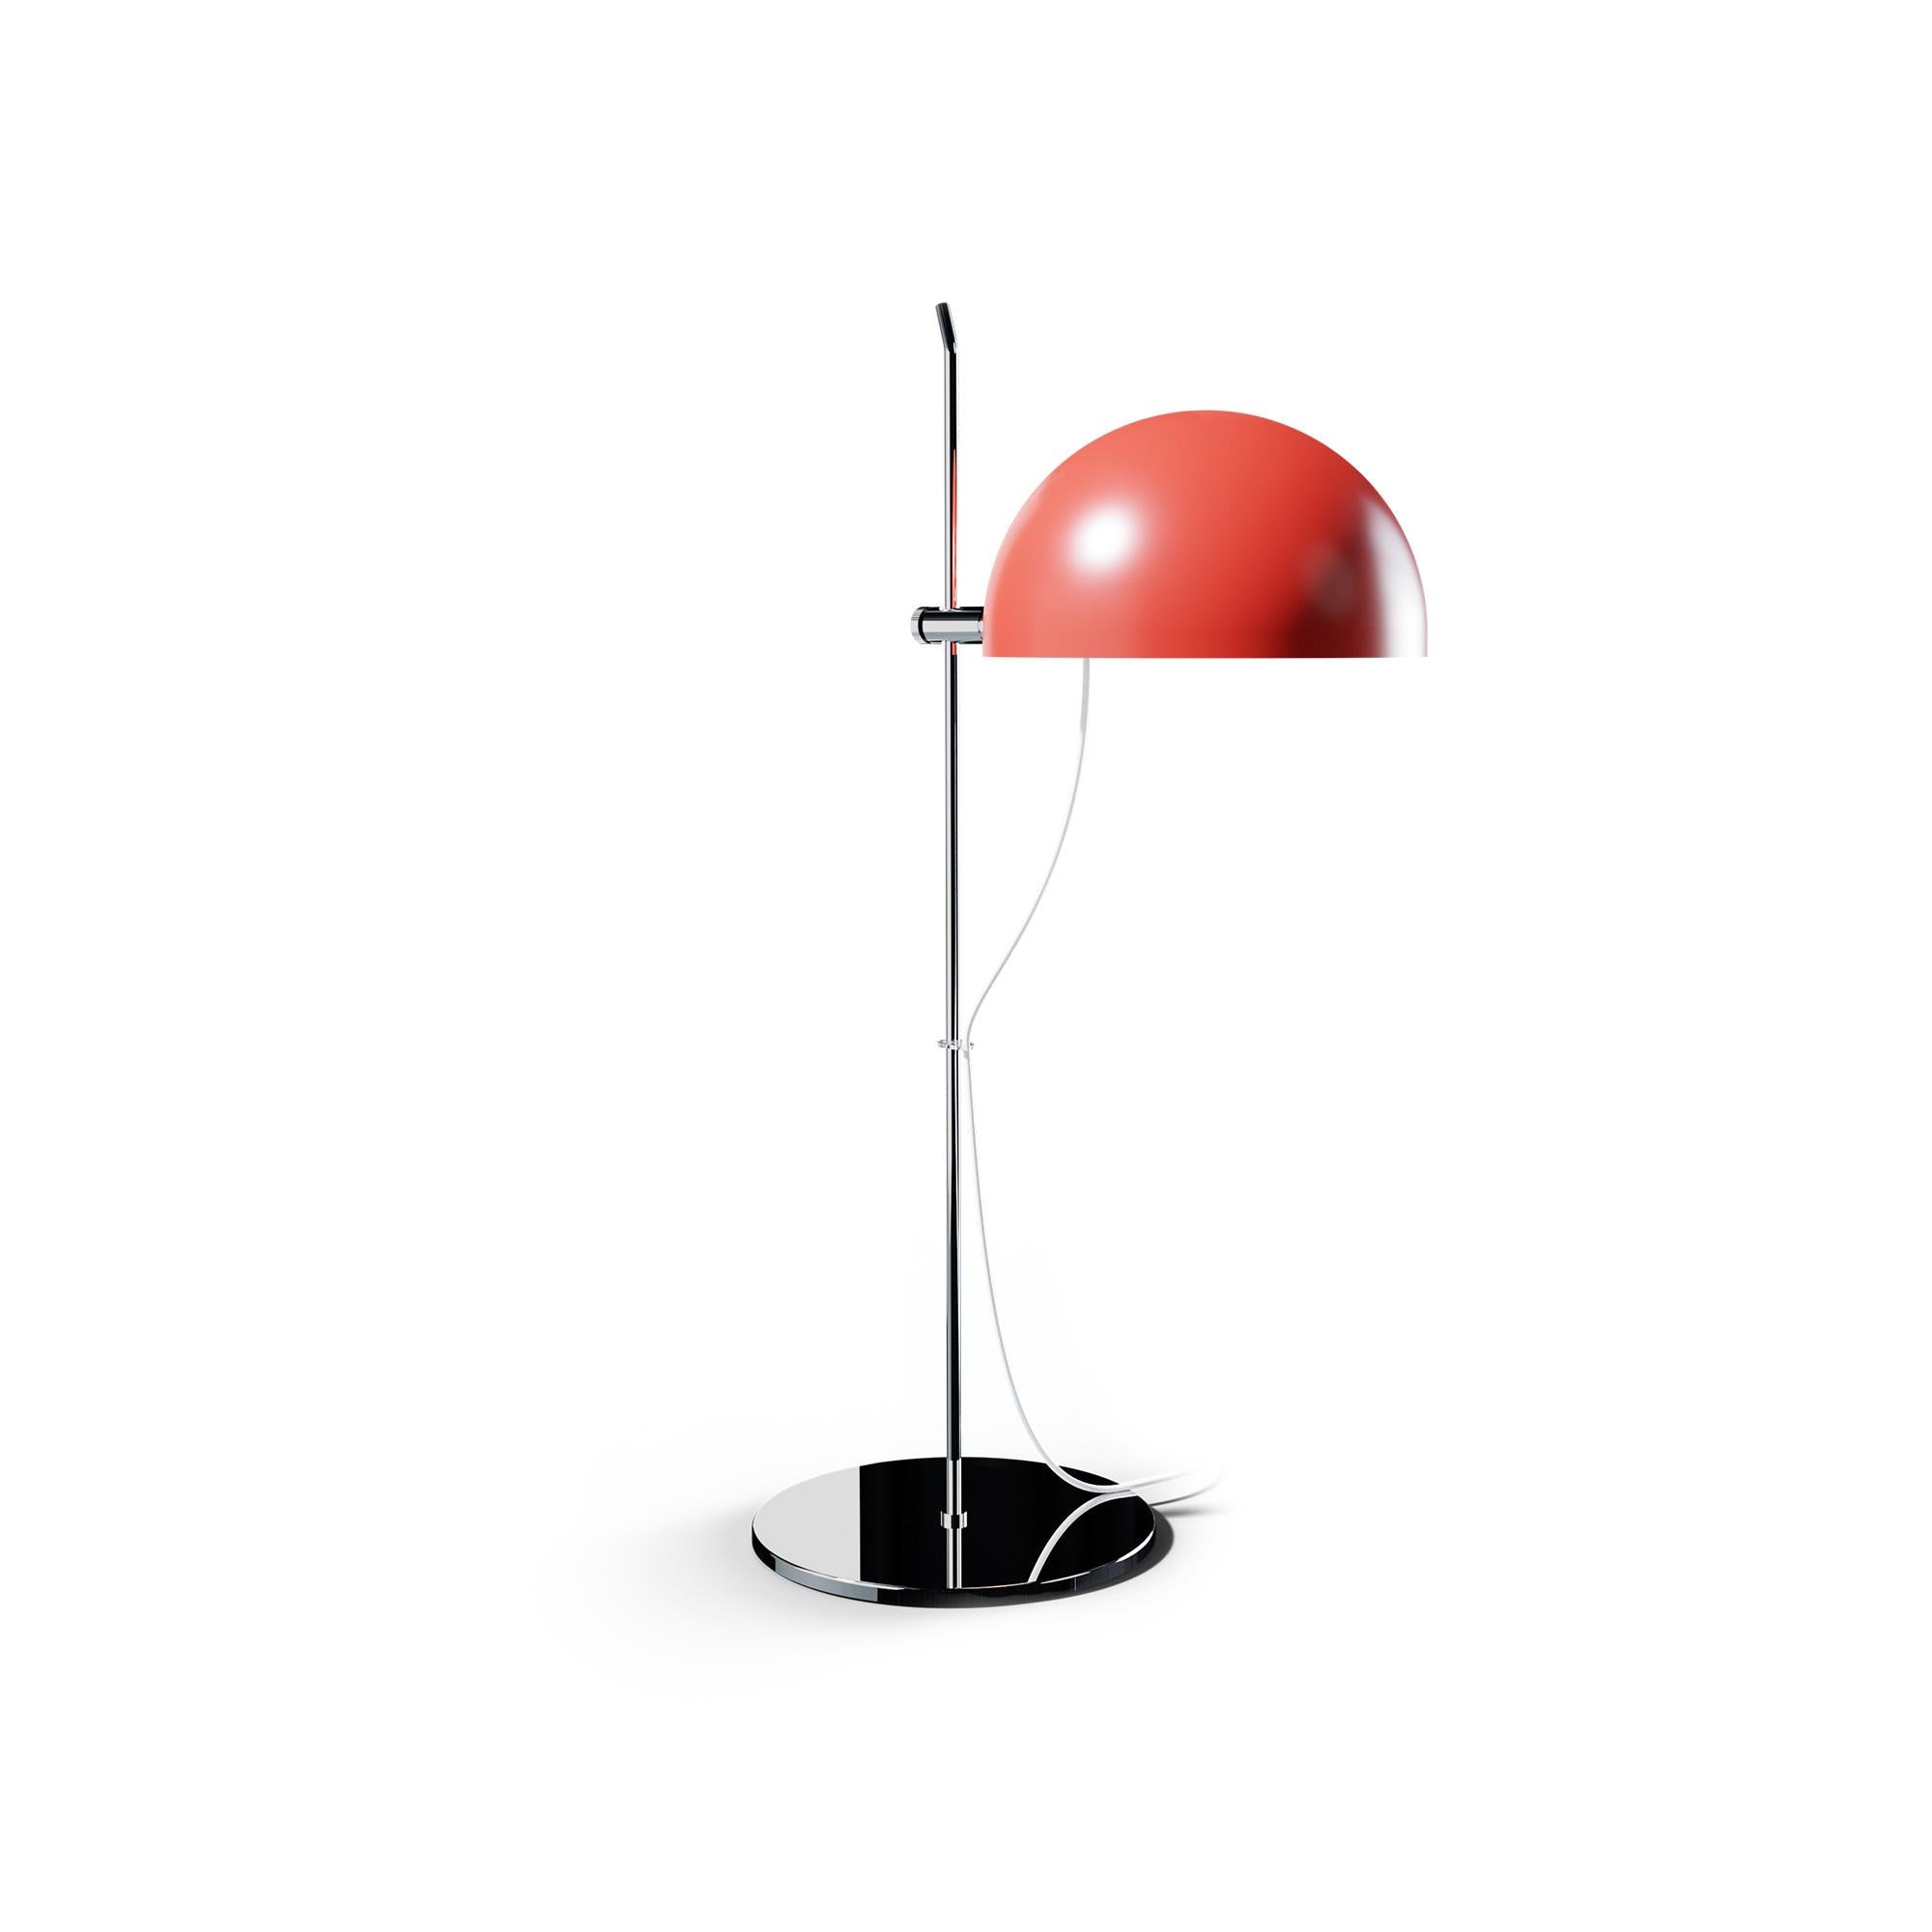 Alain Richard 'A21' Desk Lamp in Chrome for Disderot For Sale 5